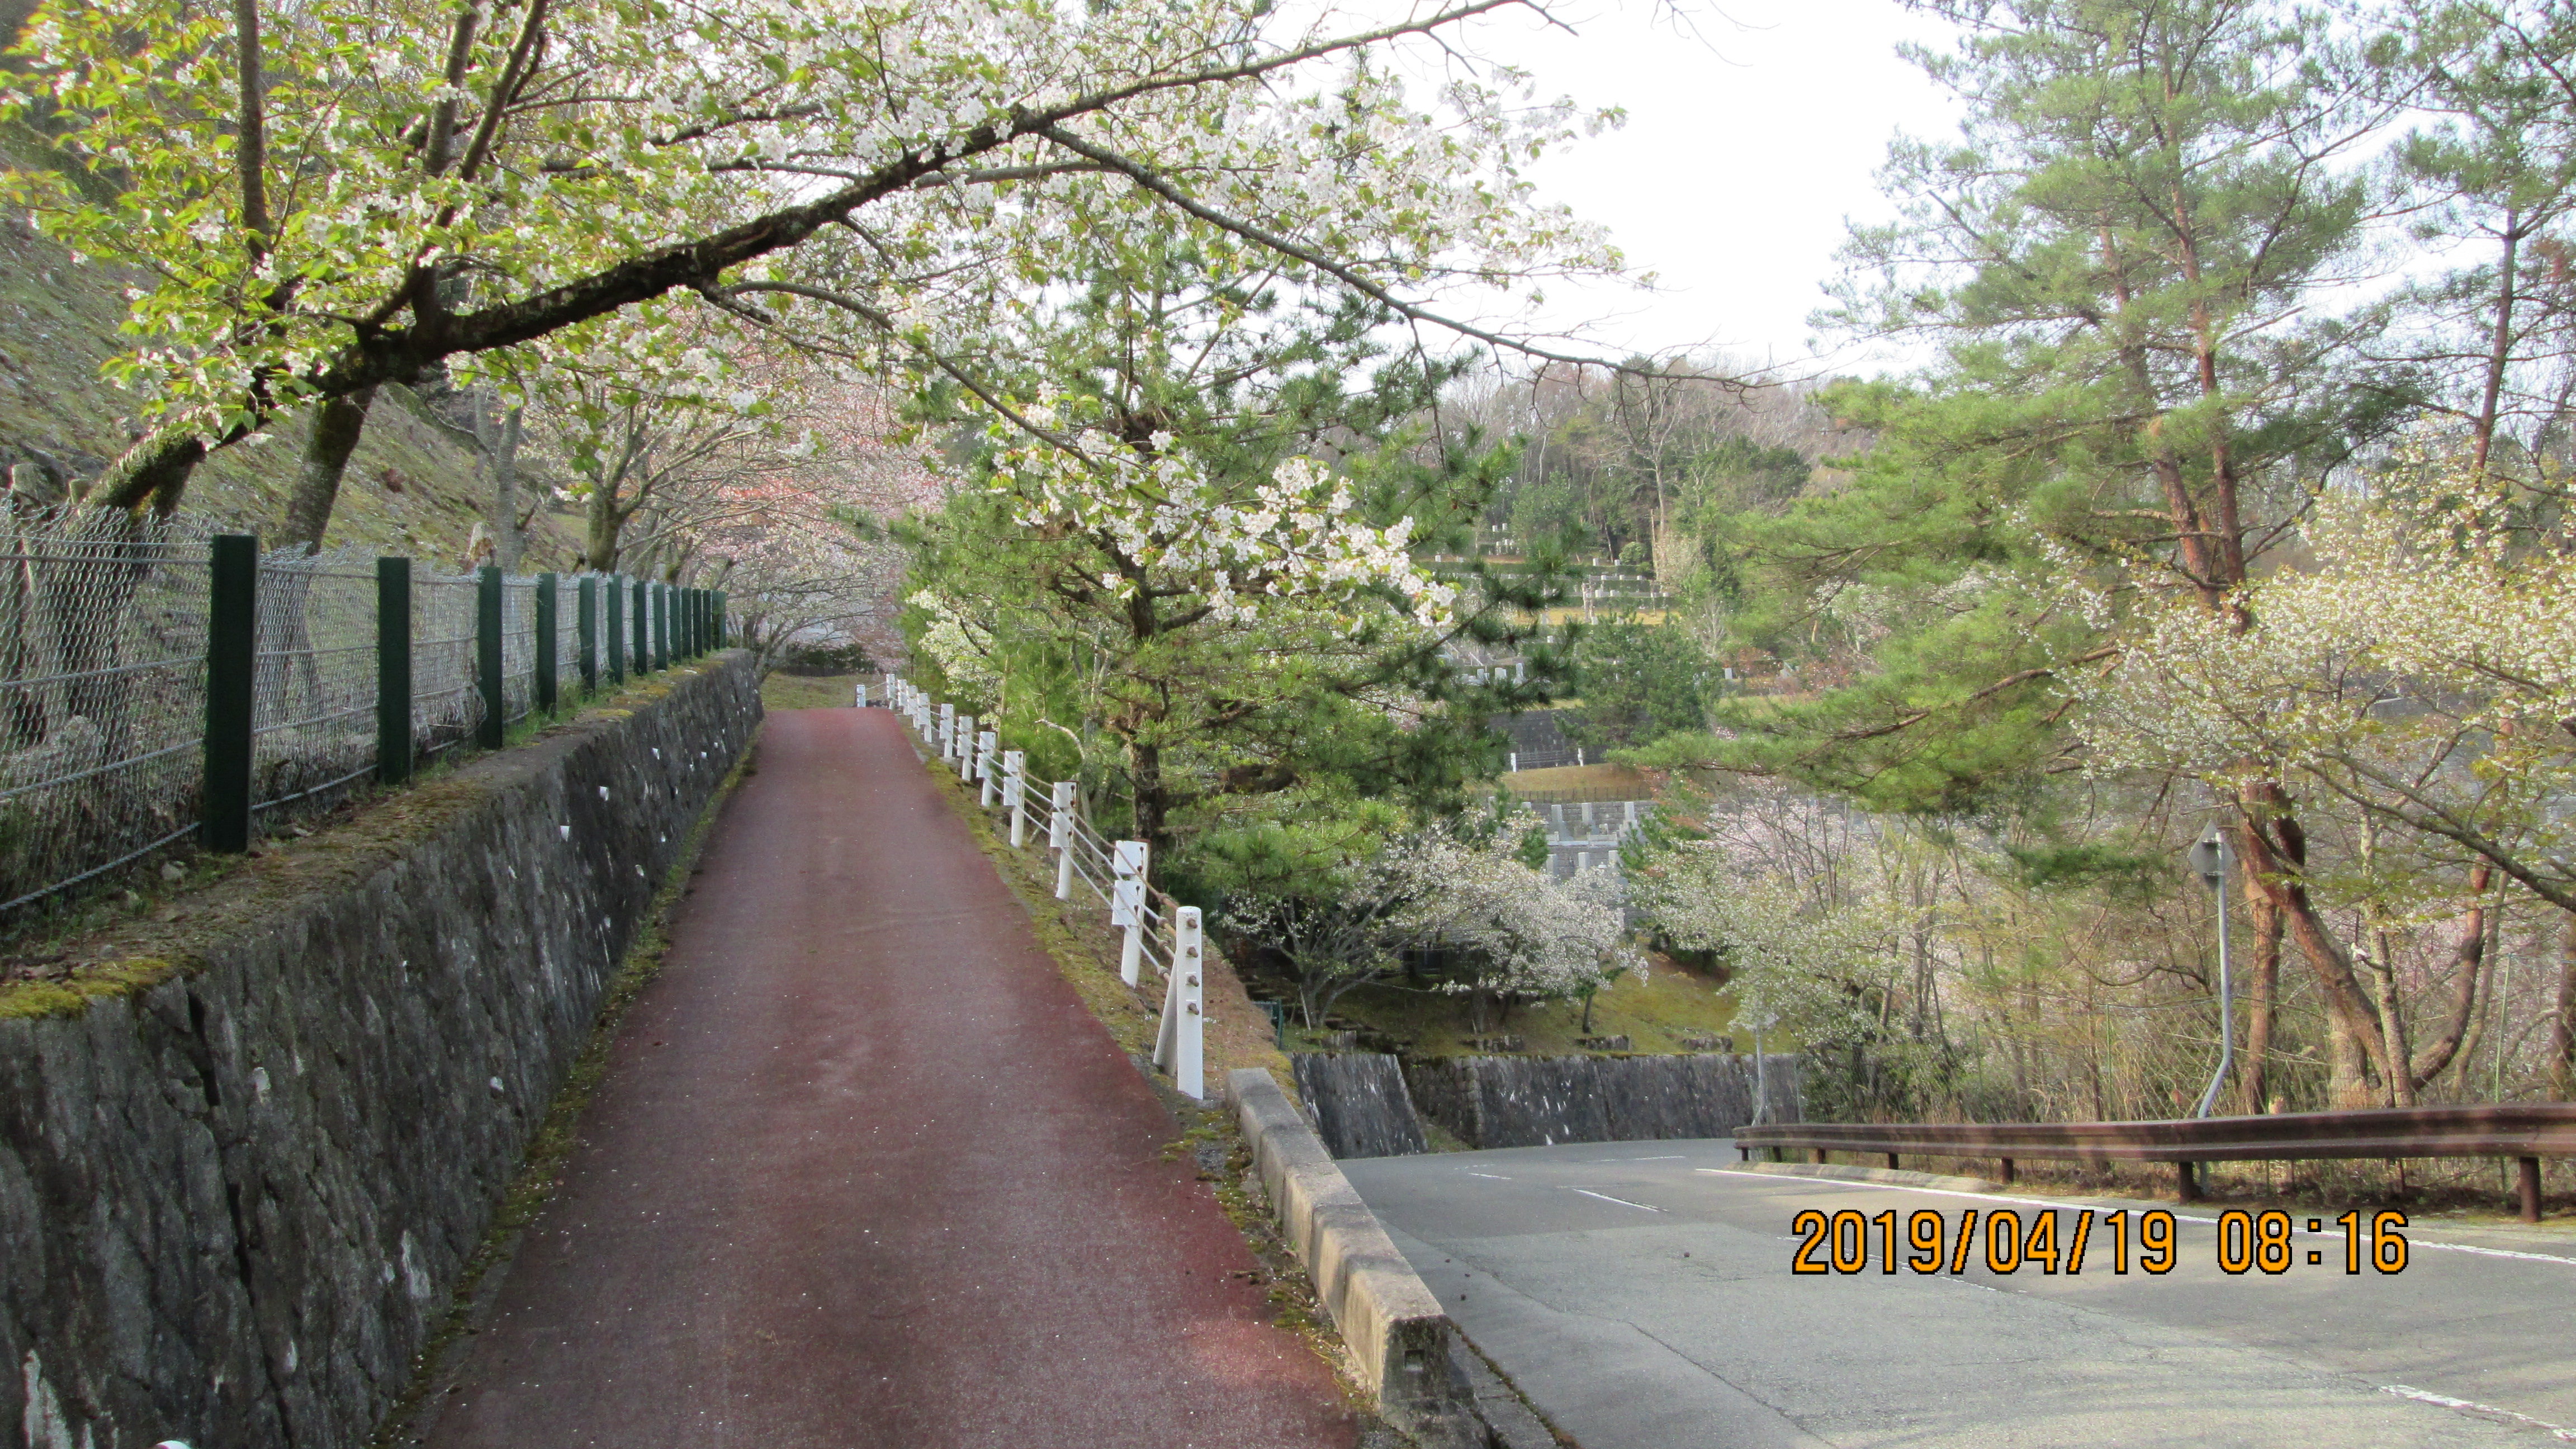  バス通り・4番枝道「桜」風景